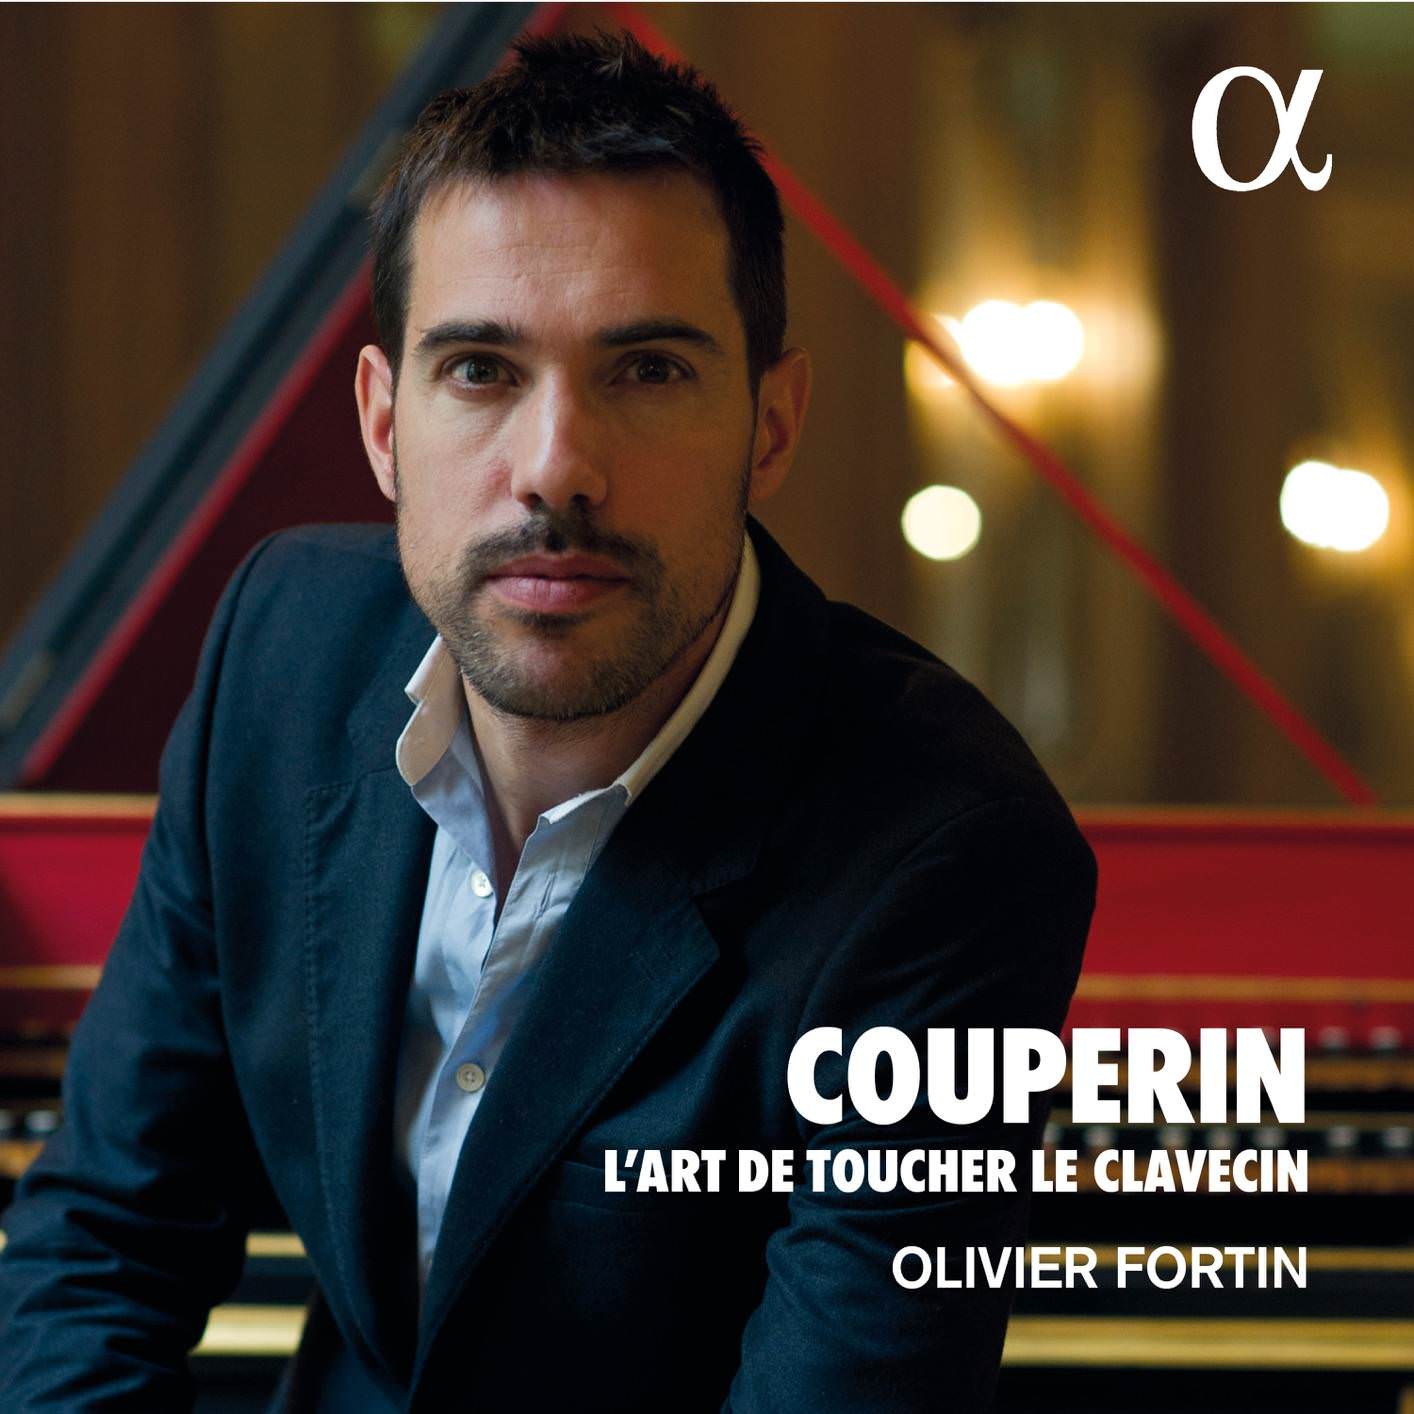 Olivier Fortin - Couperin: L’art de toucher le clavecin (2018) [FLAC 24bit/96kHz]